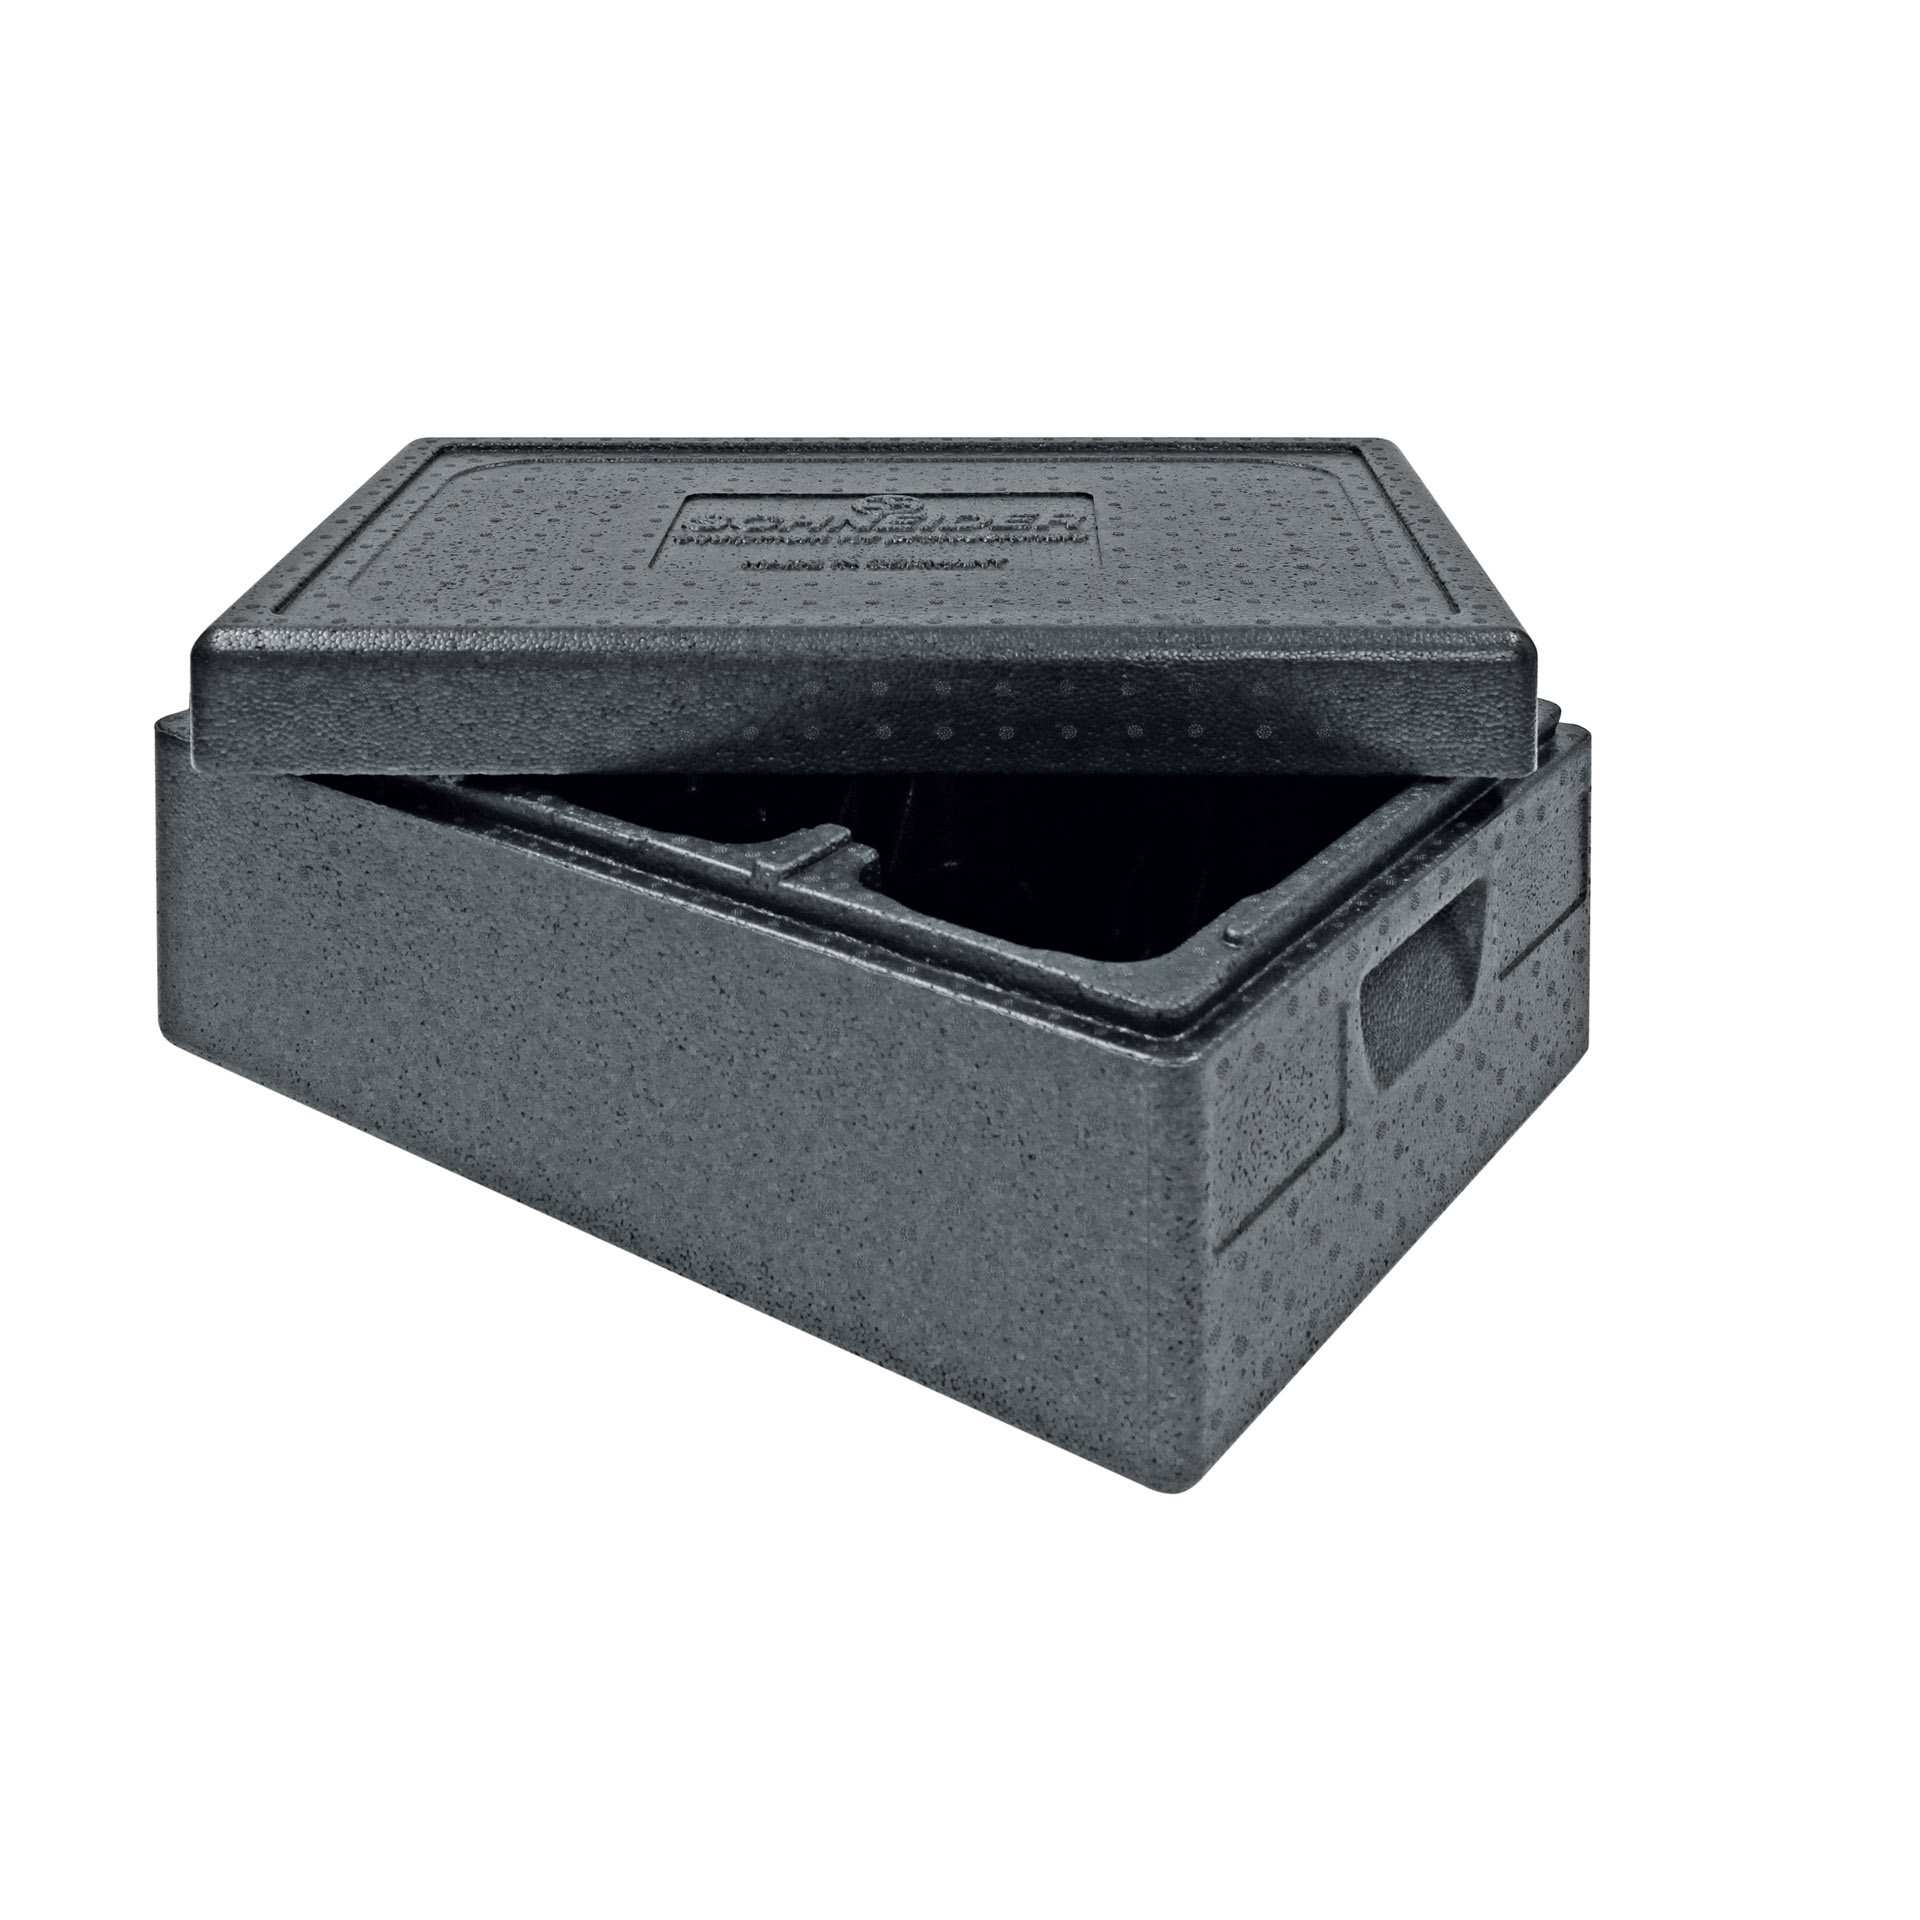 TOP-BOX - mit Deckel - Abm. 60,0 x 40,0 x 27,0 cm - Inhalt 3 x 7,3 l - EPP - 660270-C